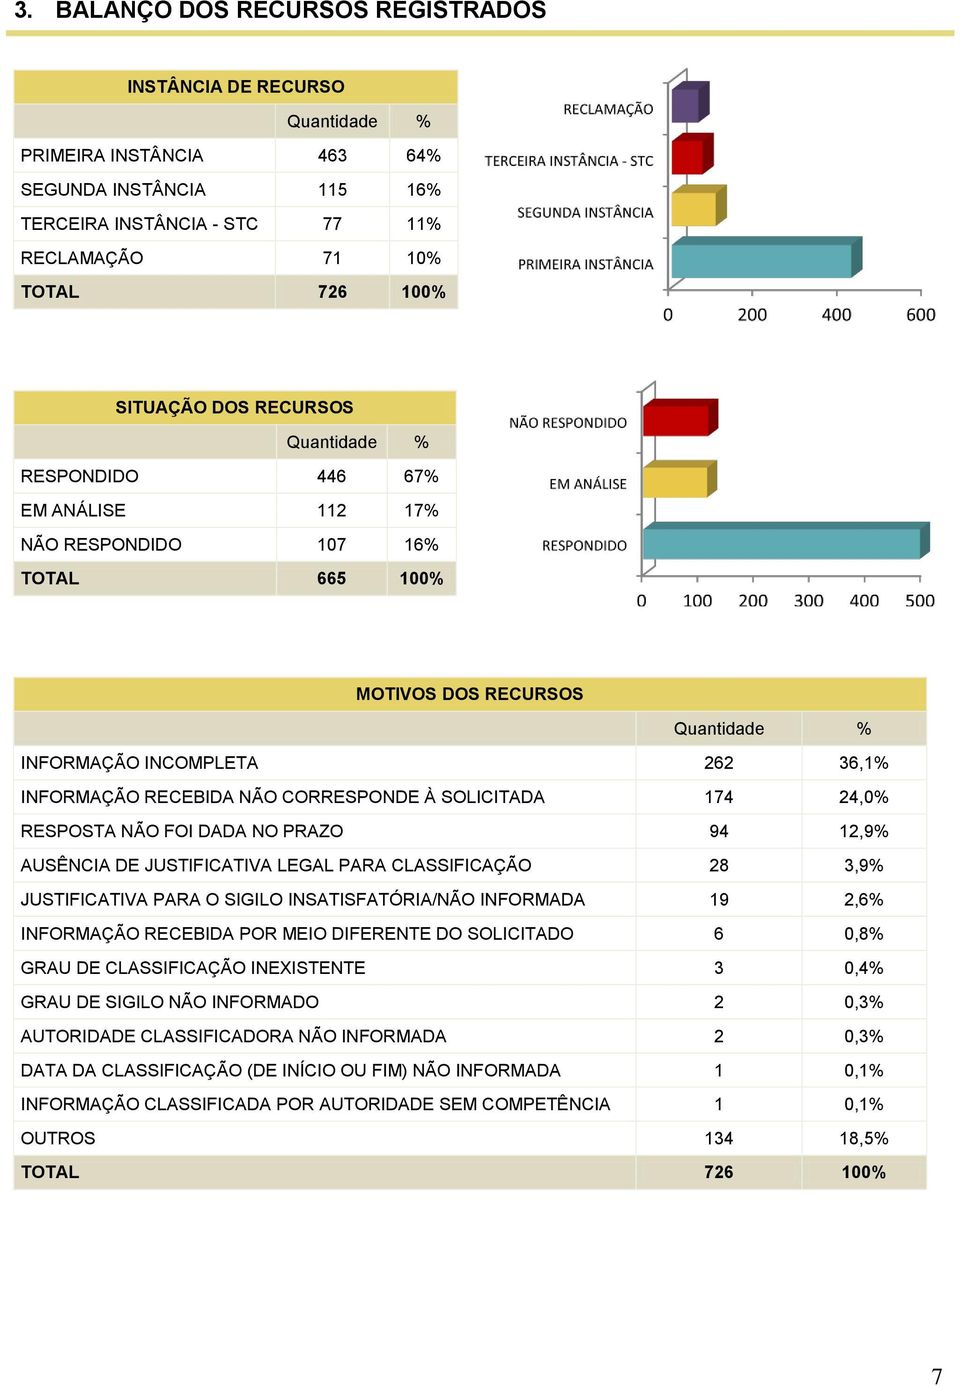 NÃO FOI DADA NO PRAZO 94 12,9% AUSÊNCIA DE JUSTIFICATIVA LEGAL PARA CLASSIFICAÇÃO 28 3,9% JUSTIFICATIVA PARA O SIGILO INSATISFATÓRIA/NÃO INFORMADA 19 2,6% INFORMAÇÃO RECEBIDA POR MEIO DIFERENTE DO